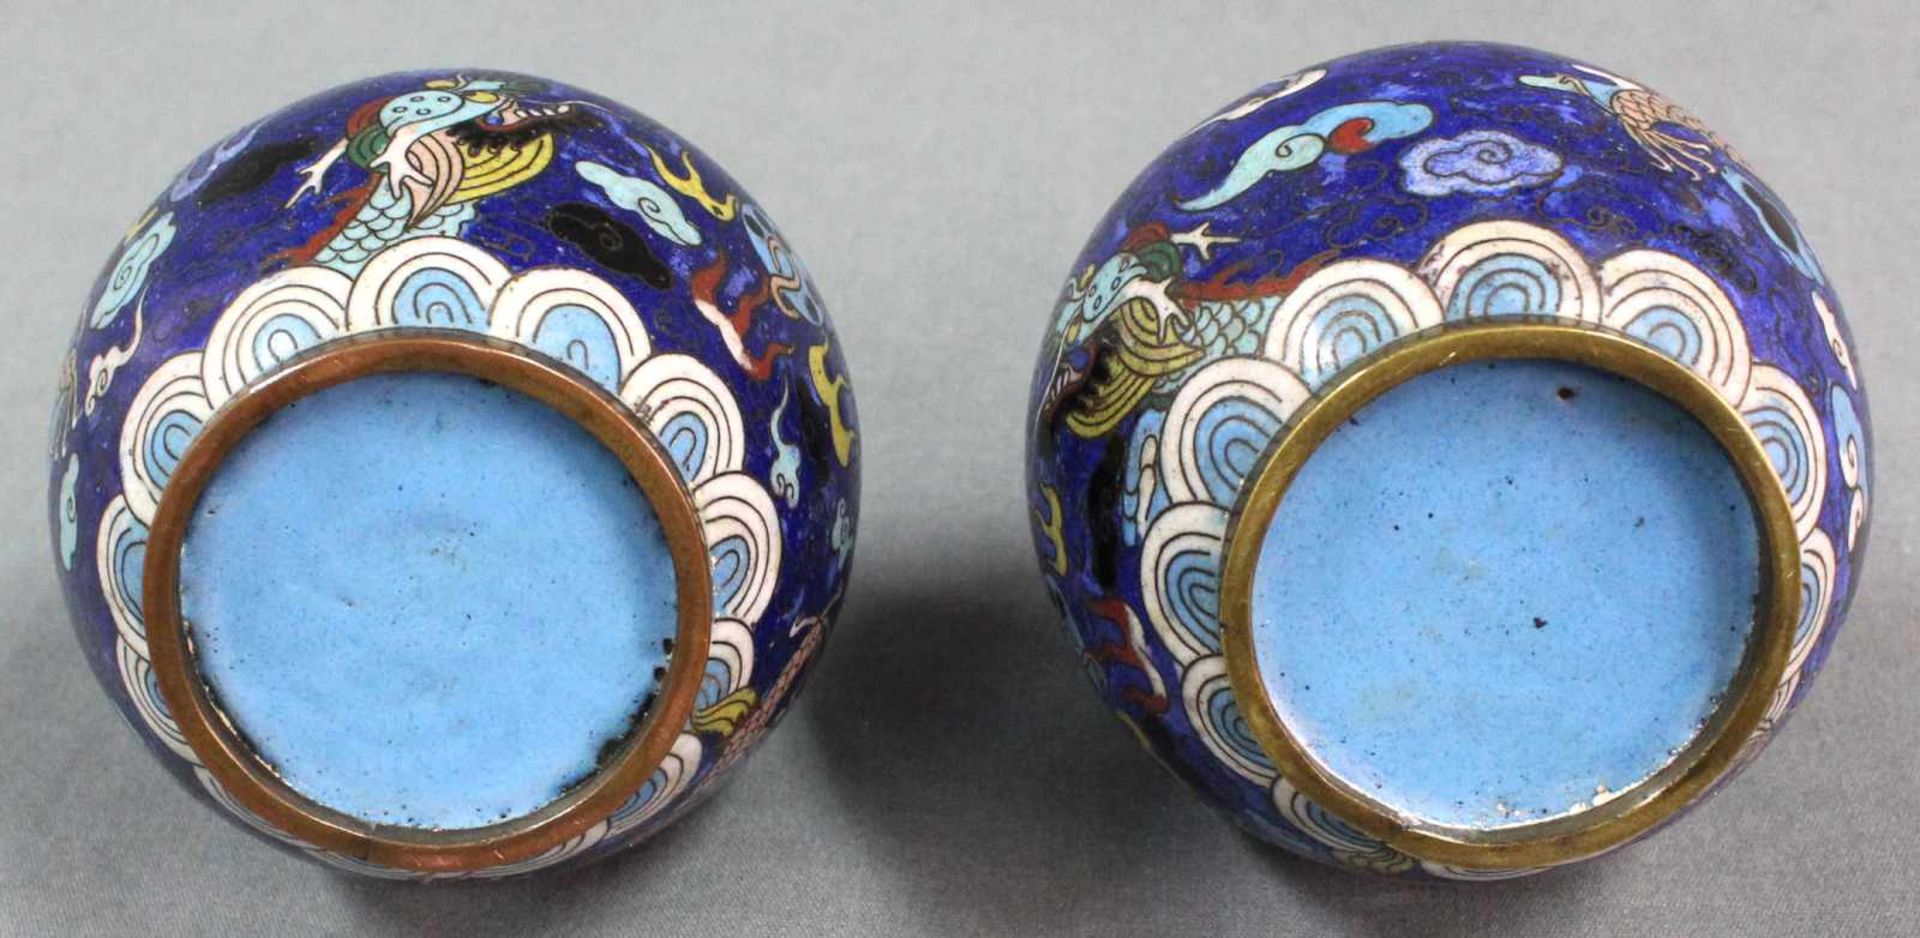 Zwei Claisonne Vasen Japan. Drache jagt die Flammende Perle.Je 16 cm hoch. Wohl Edo-Zeit (1600 - - Image 7 of 7